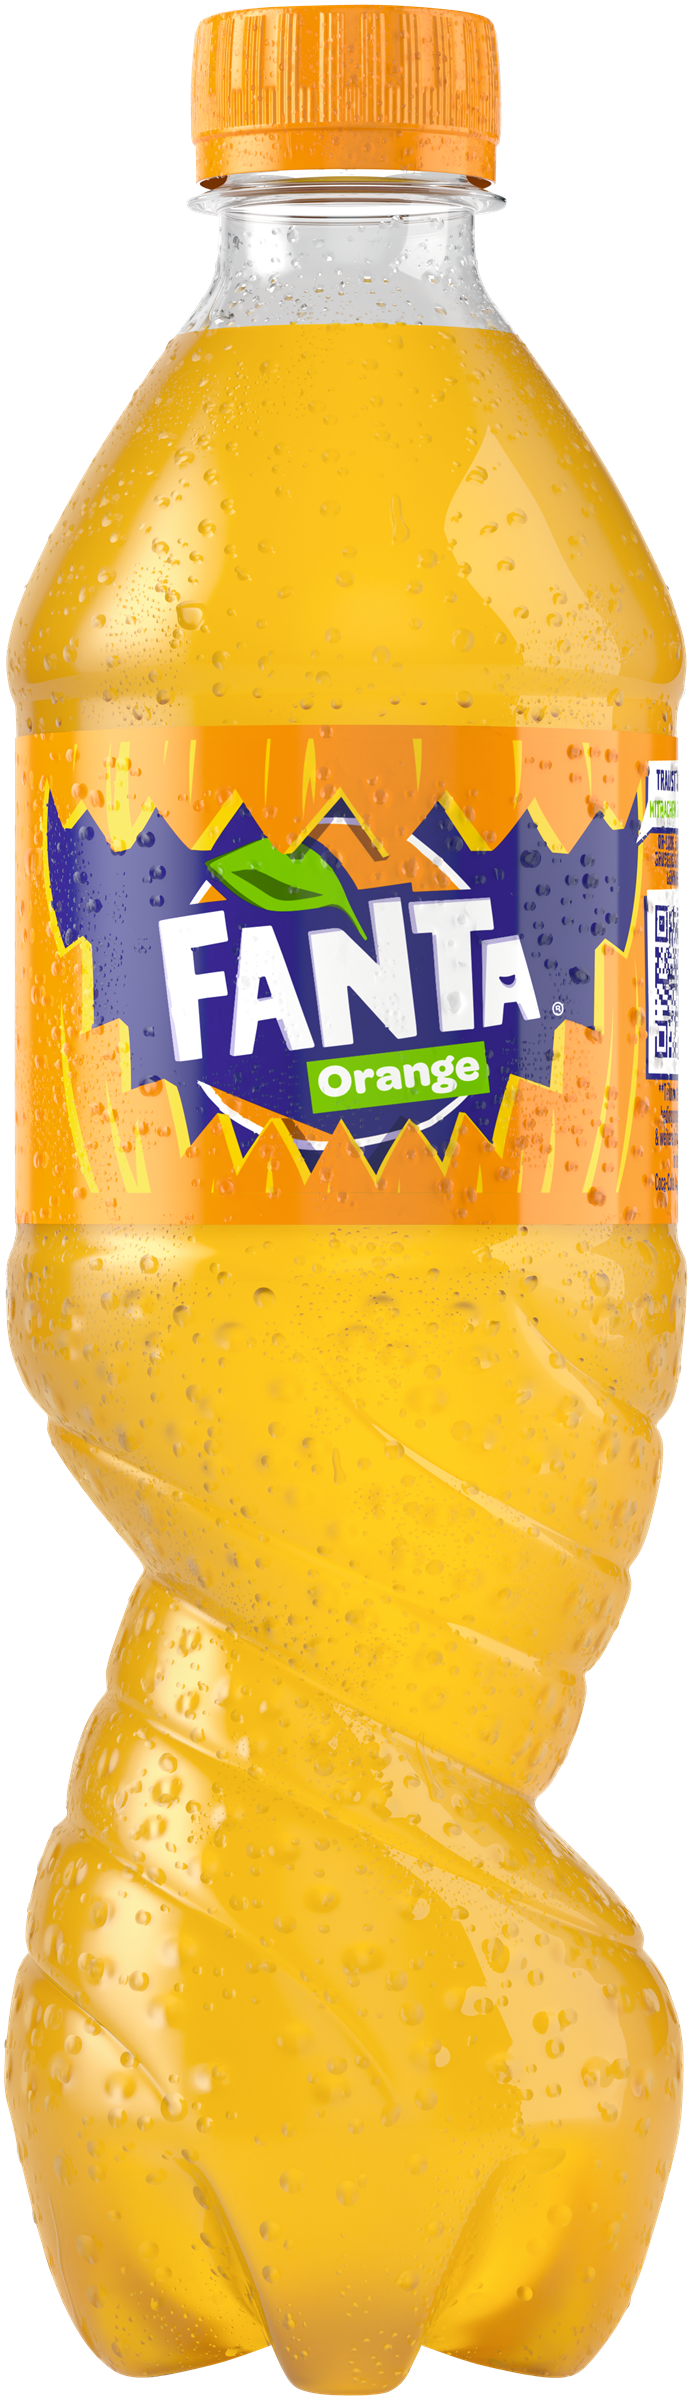 FANTA_Orange_Halloween_500ml_PET